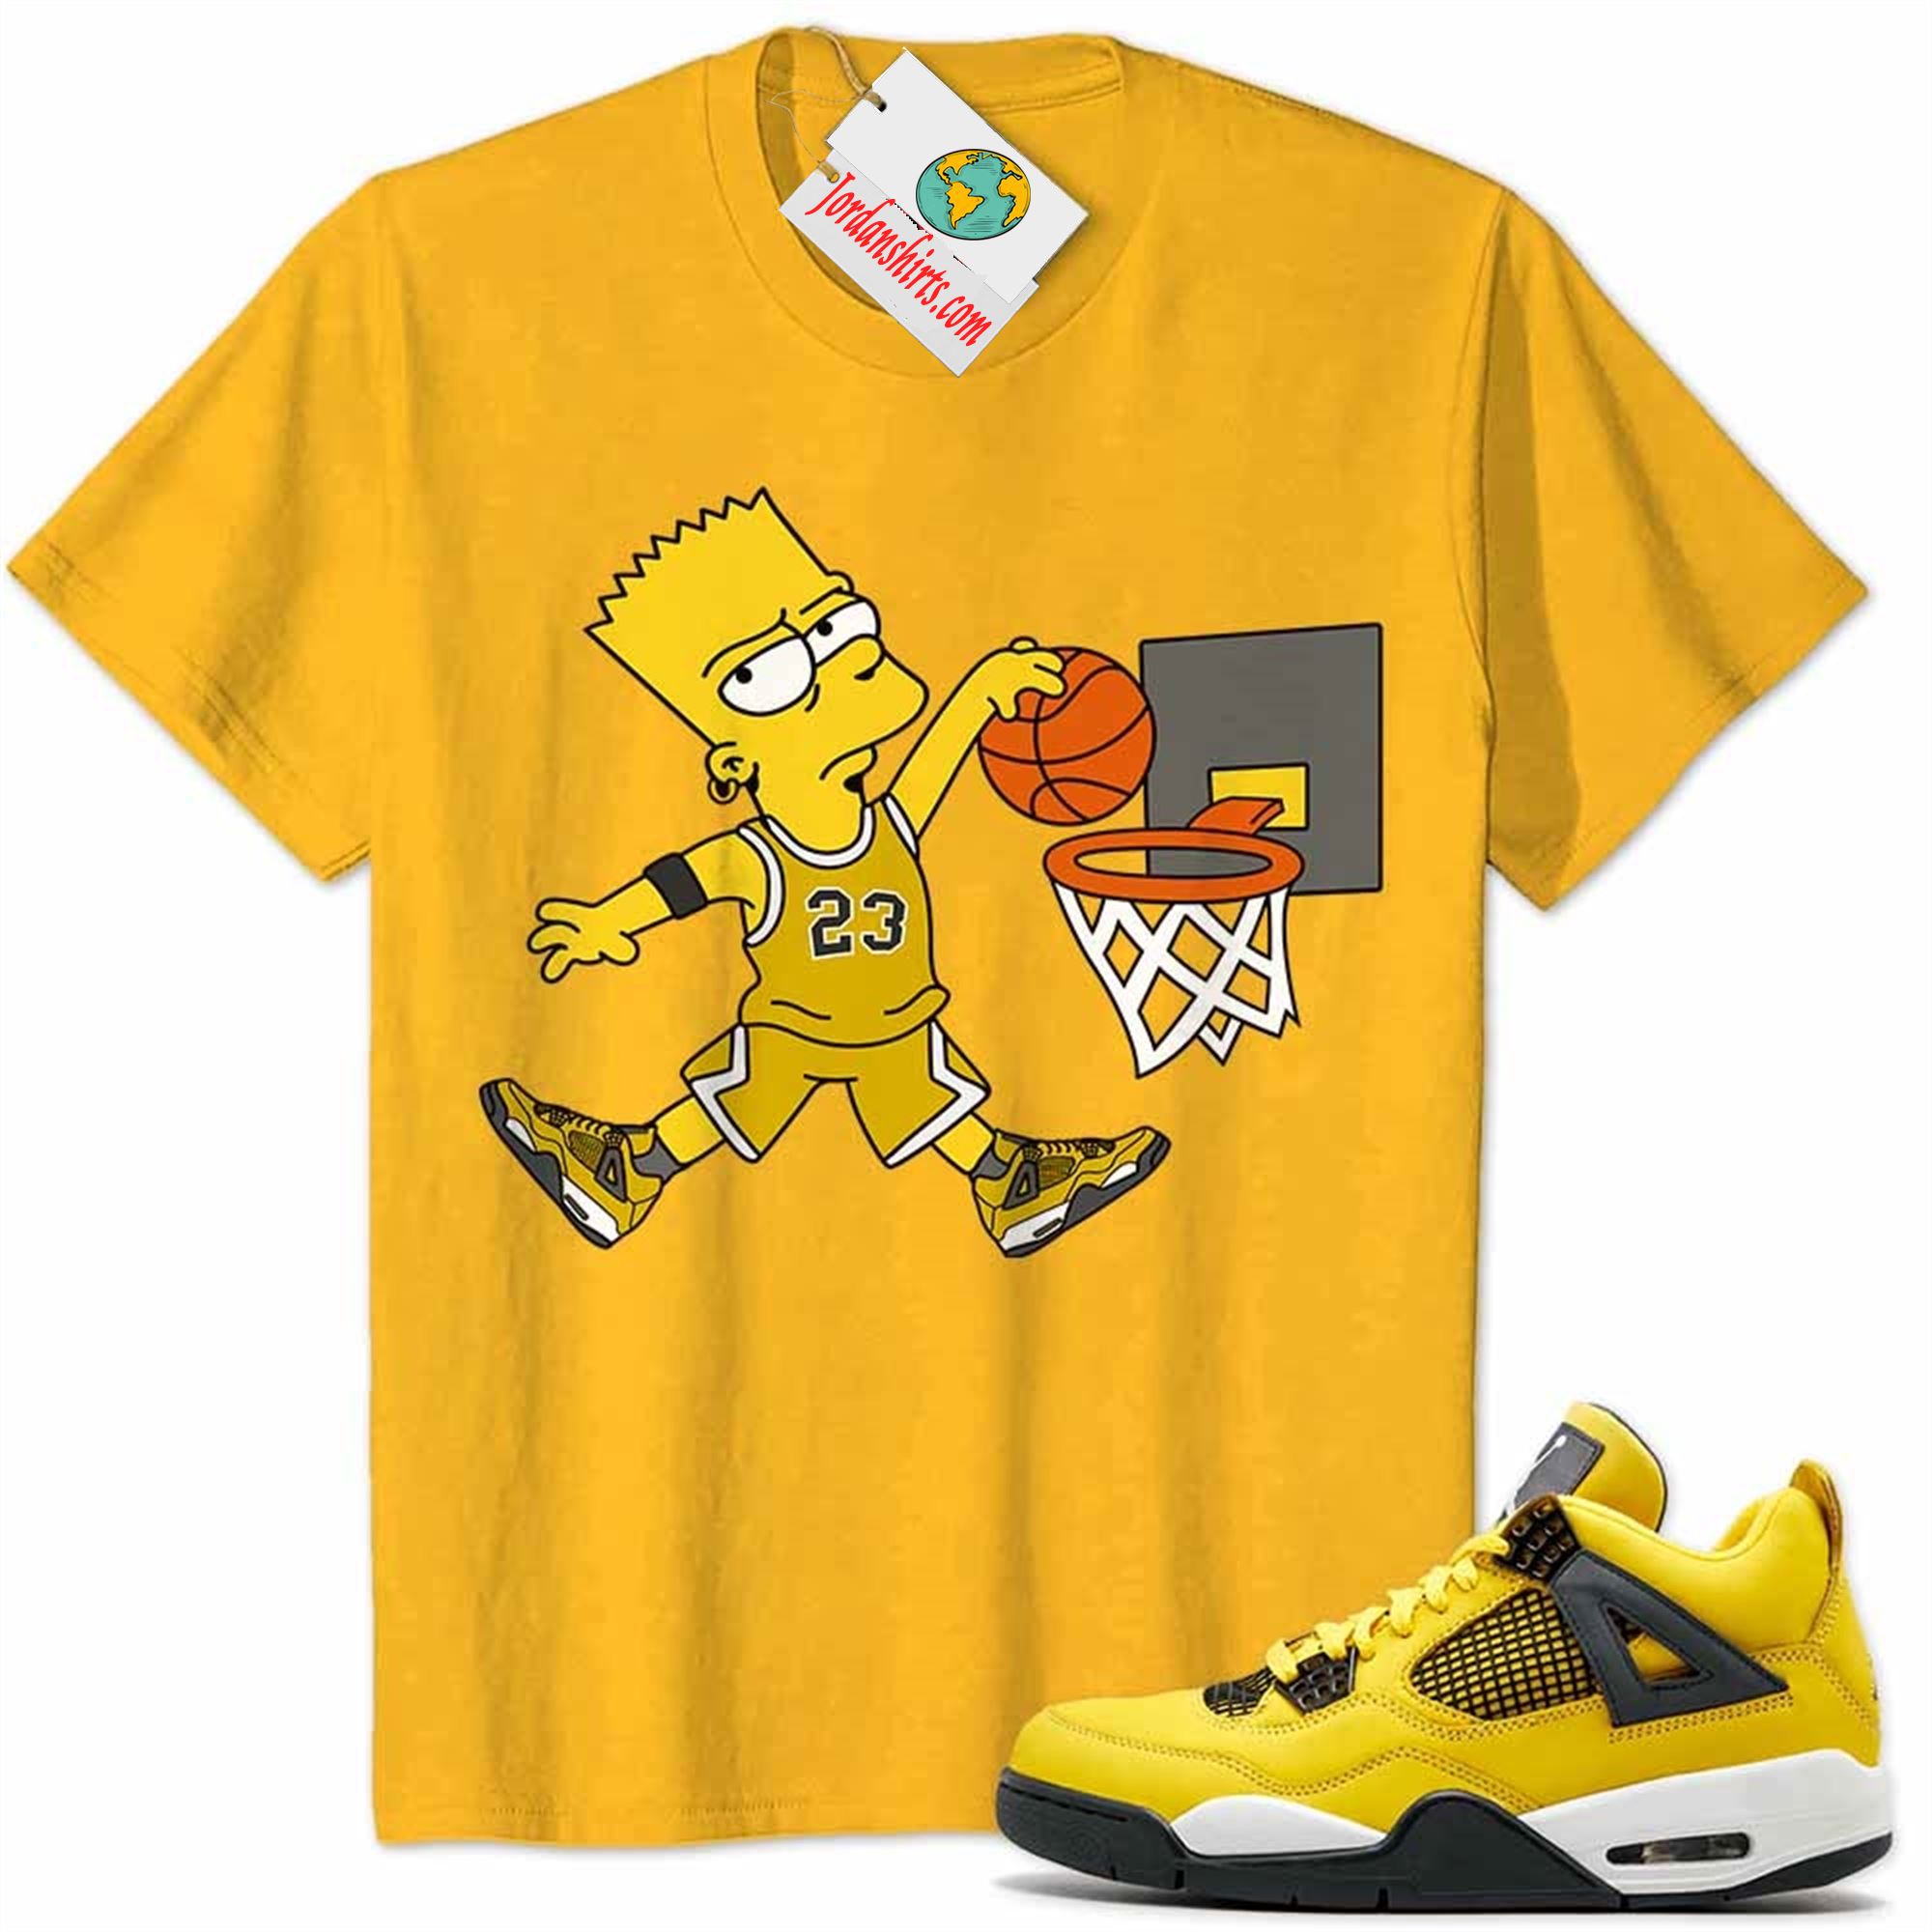 Jordan 4 Shirt, Bart Simpson Slam Dunk Basketball Gold Air Jordan 4 Tour Yellow Lightning 4s Plus Size Up To 5xl